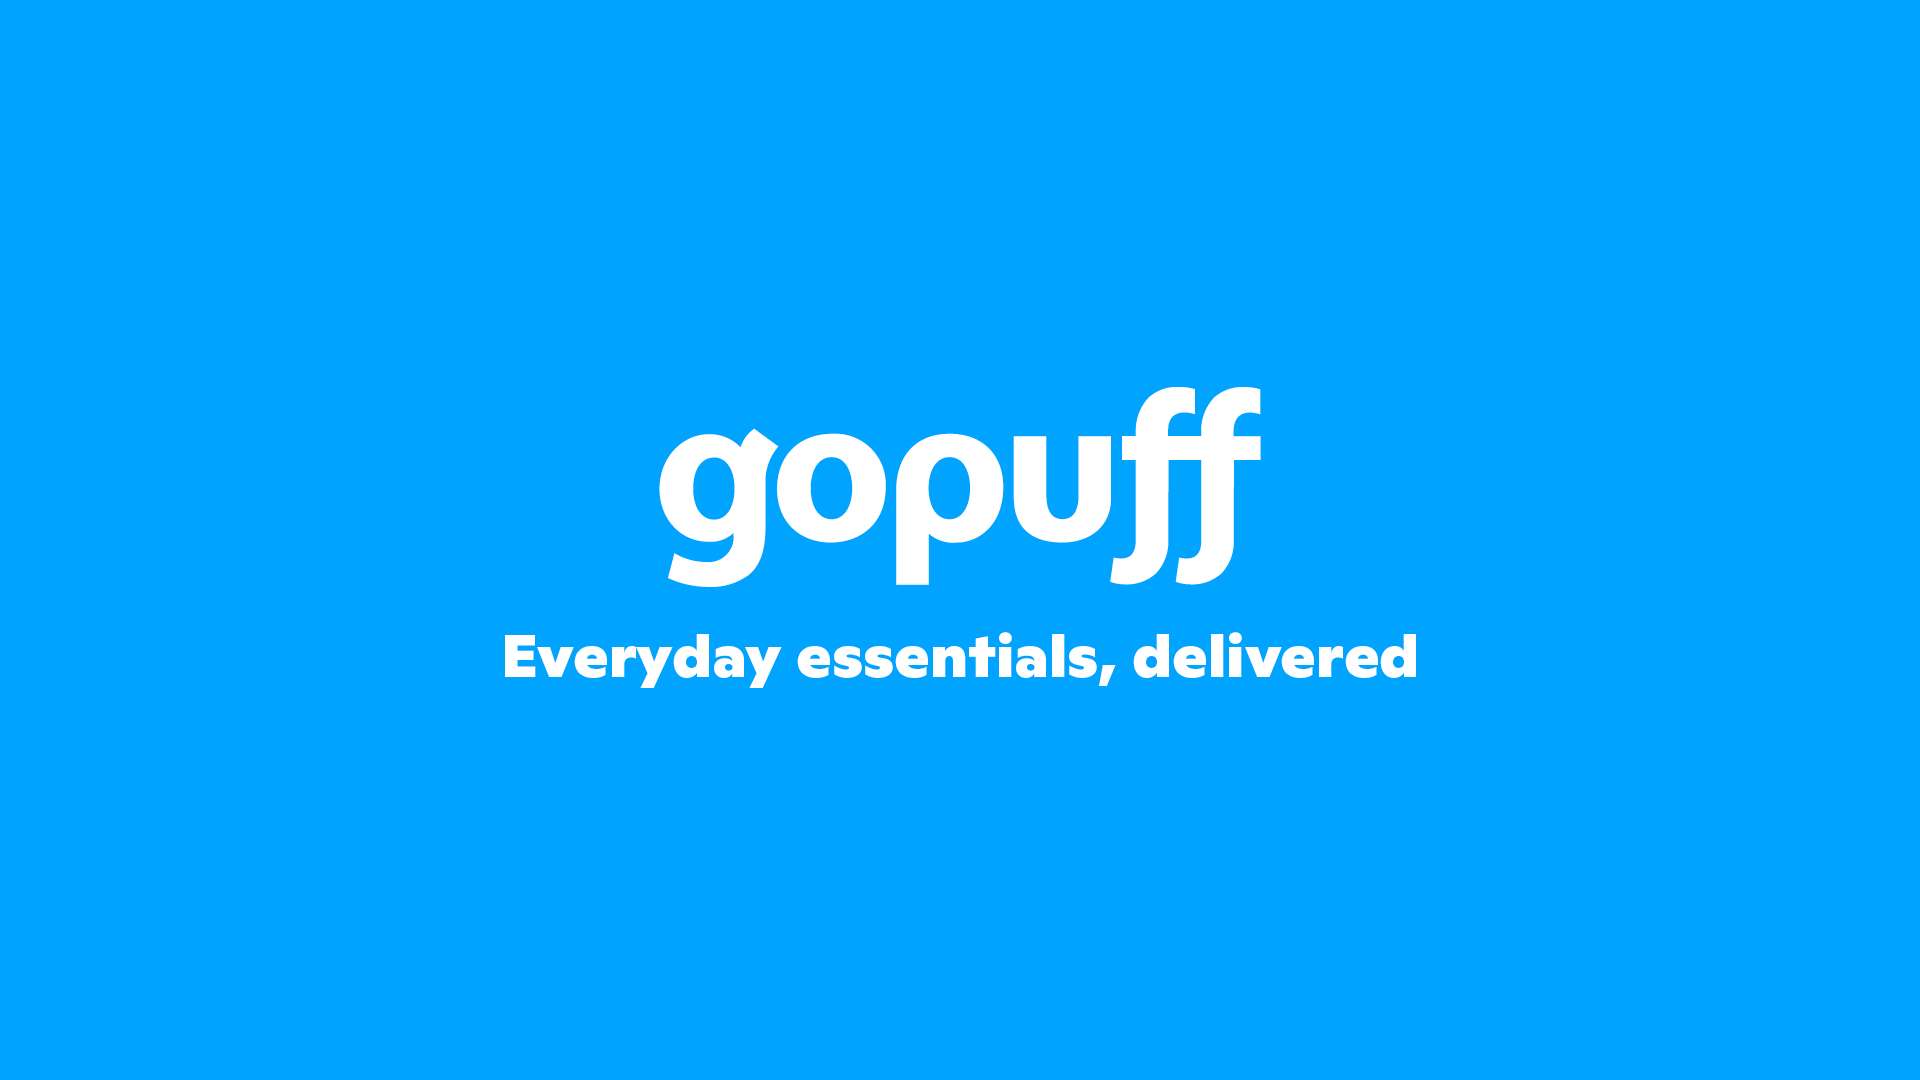 Gopuff Everyday essentials, delivered